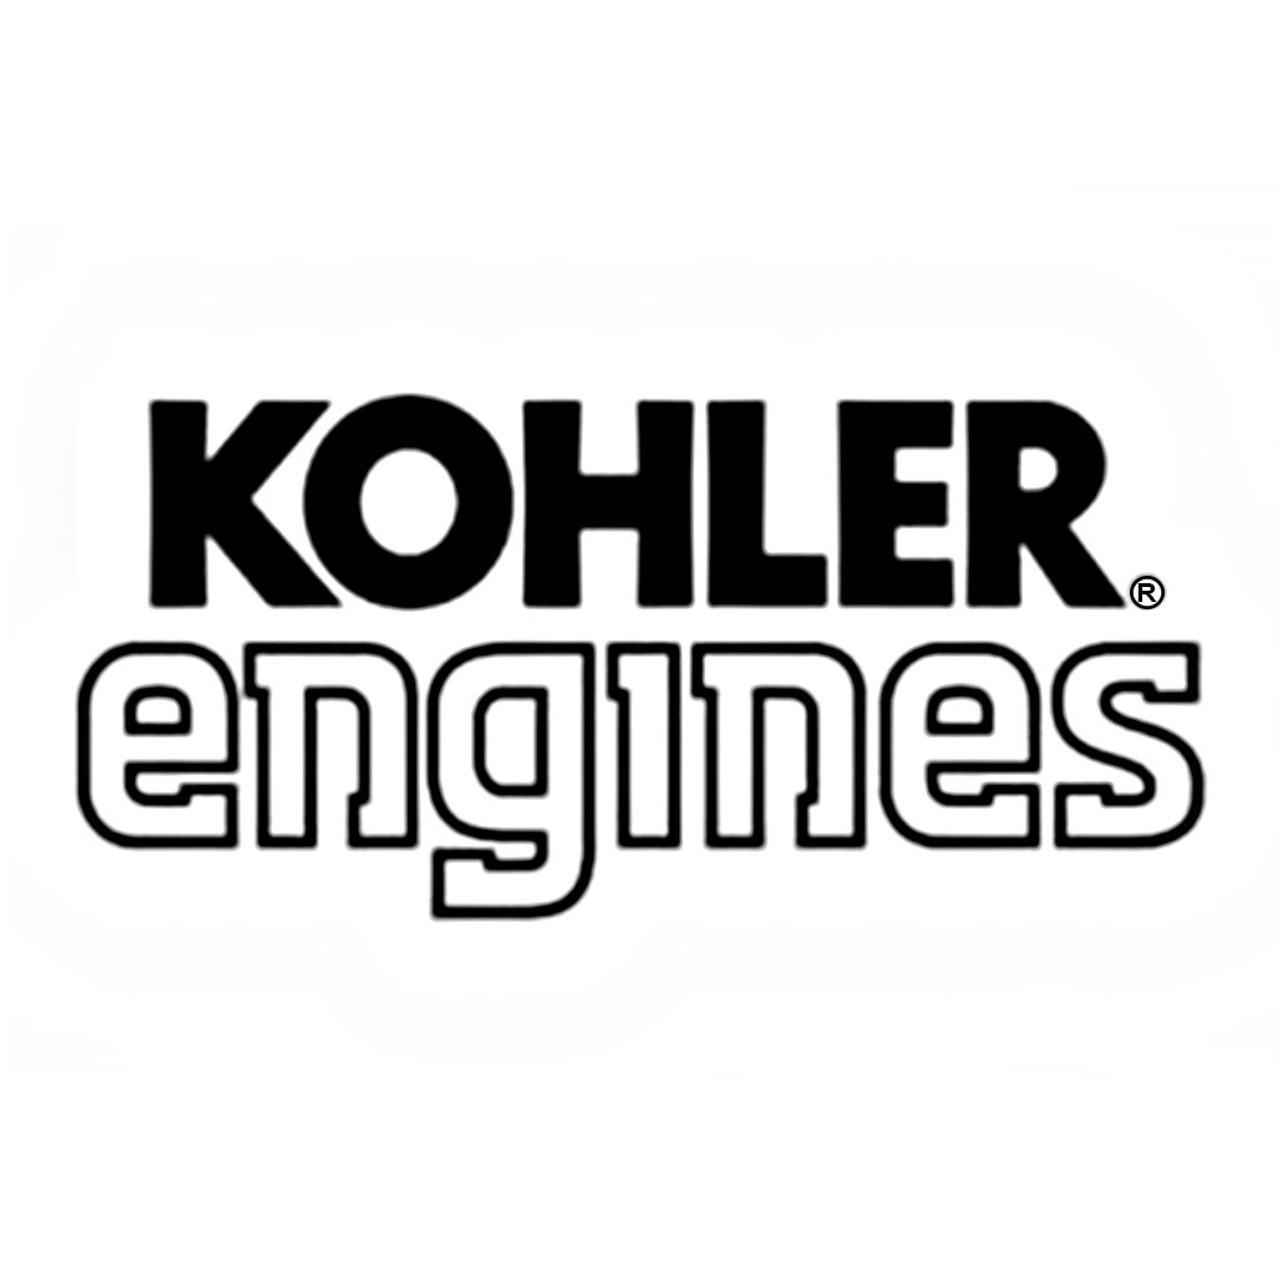 Kohler SmLh775 Aegis66 690 07